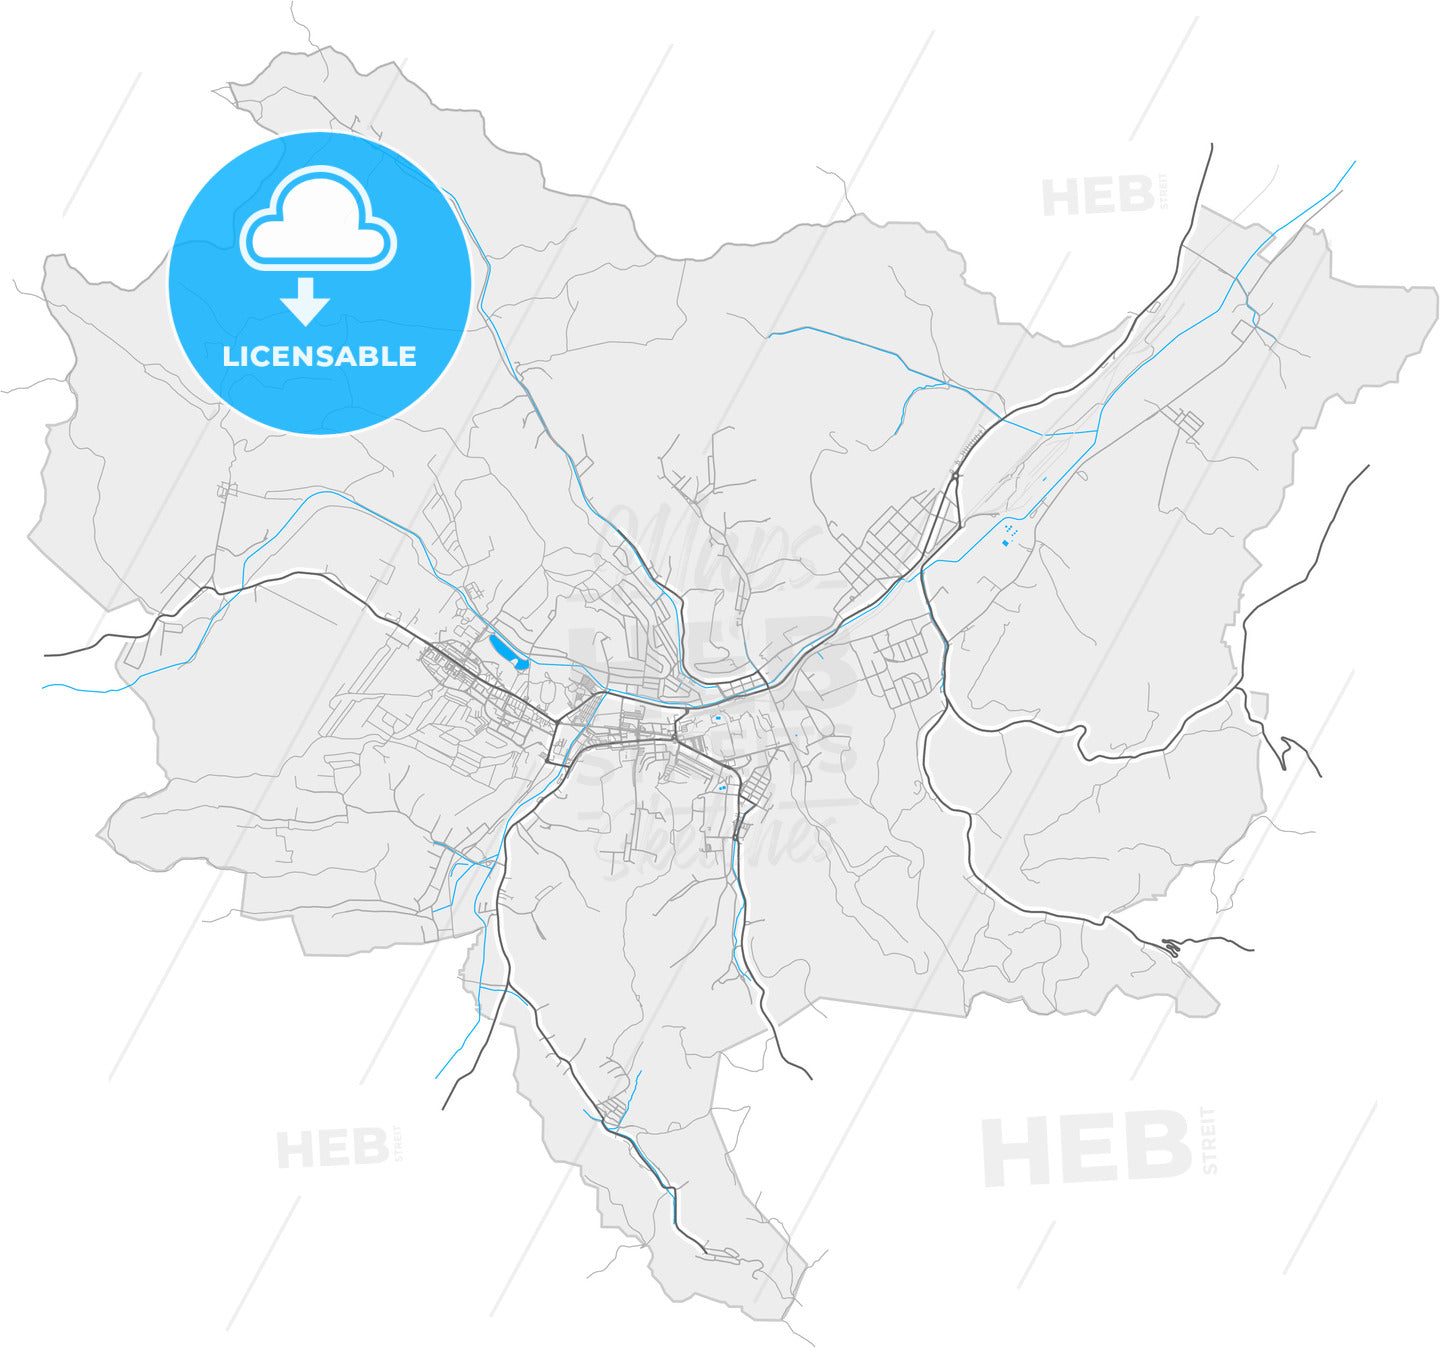 Ózd, Borsod-Abaúj-Zemplén, Hungary, high quality vector map